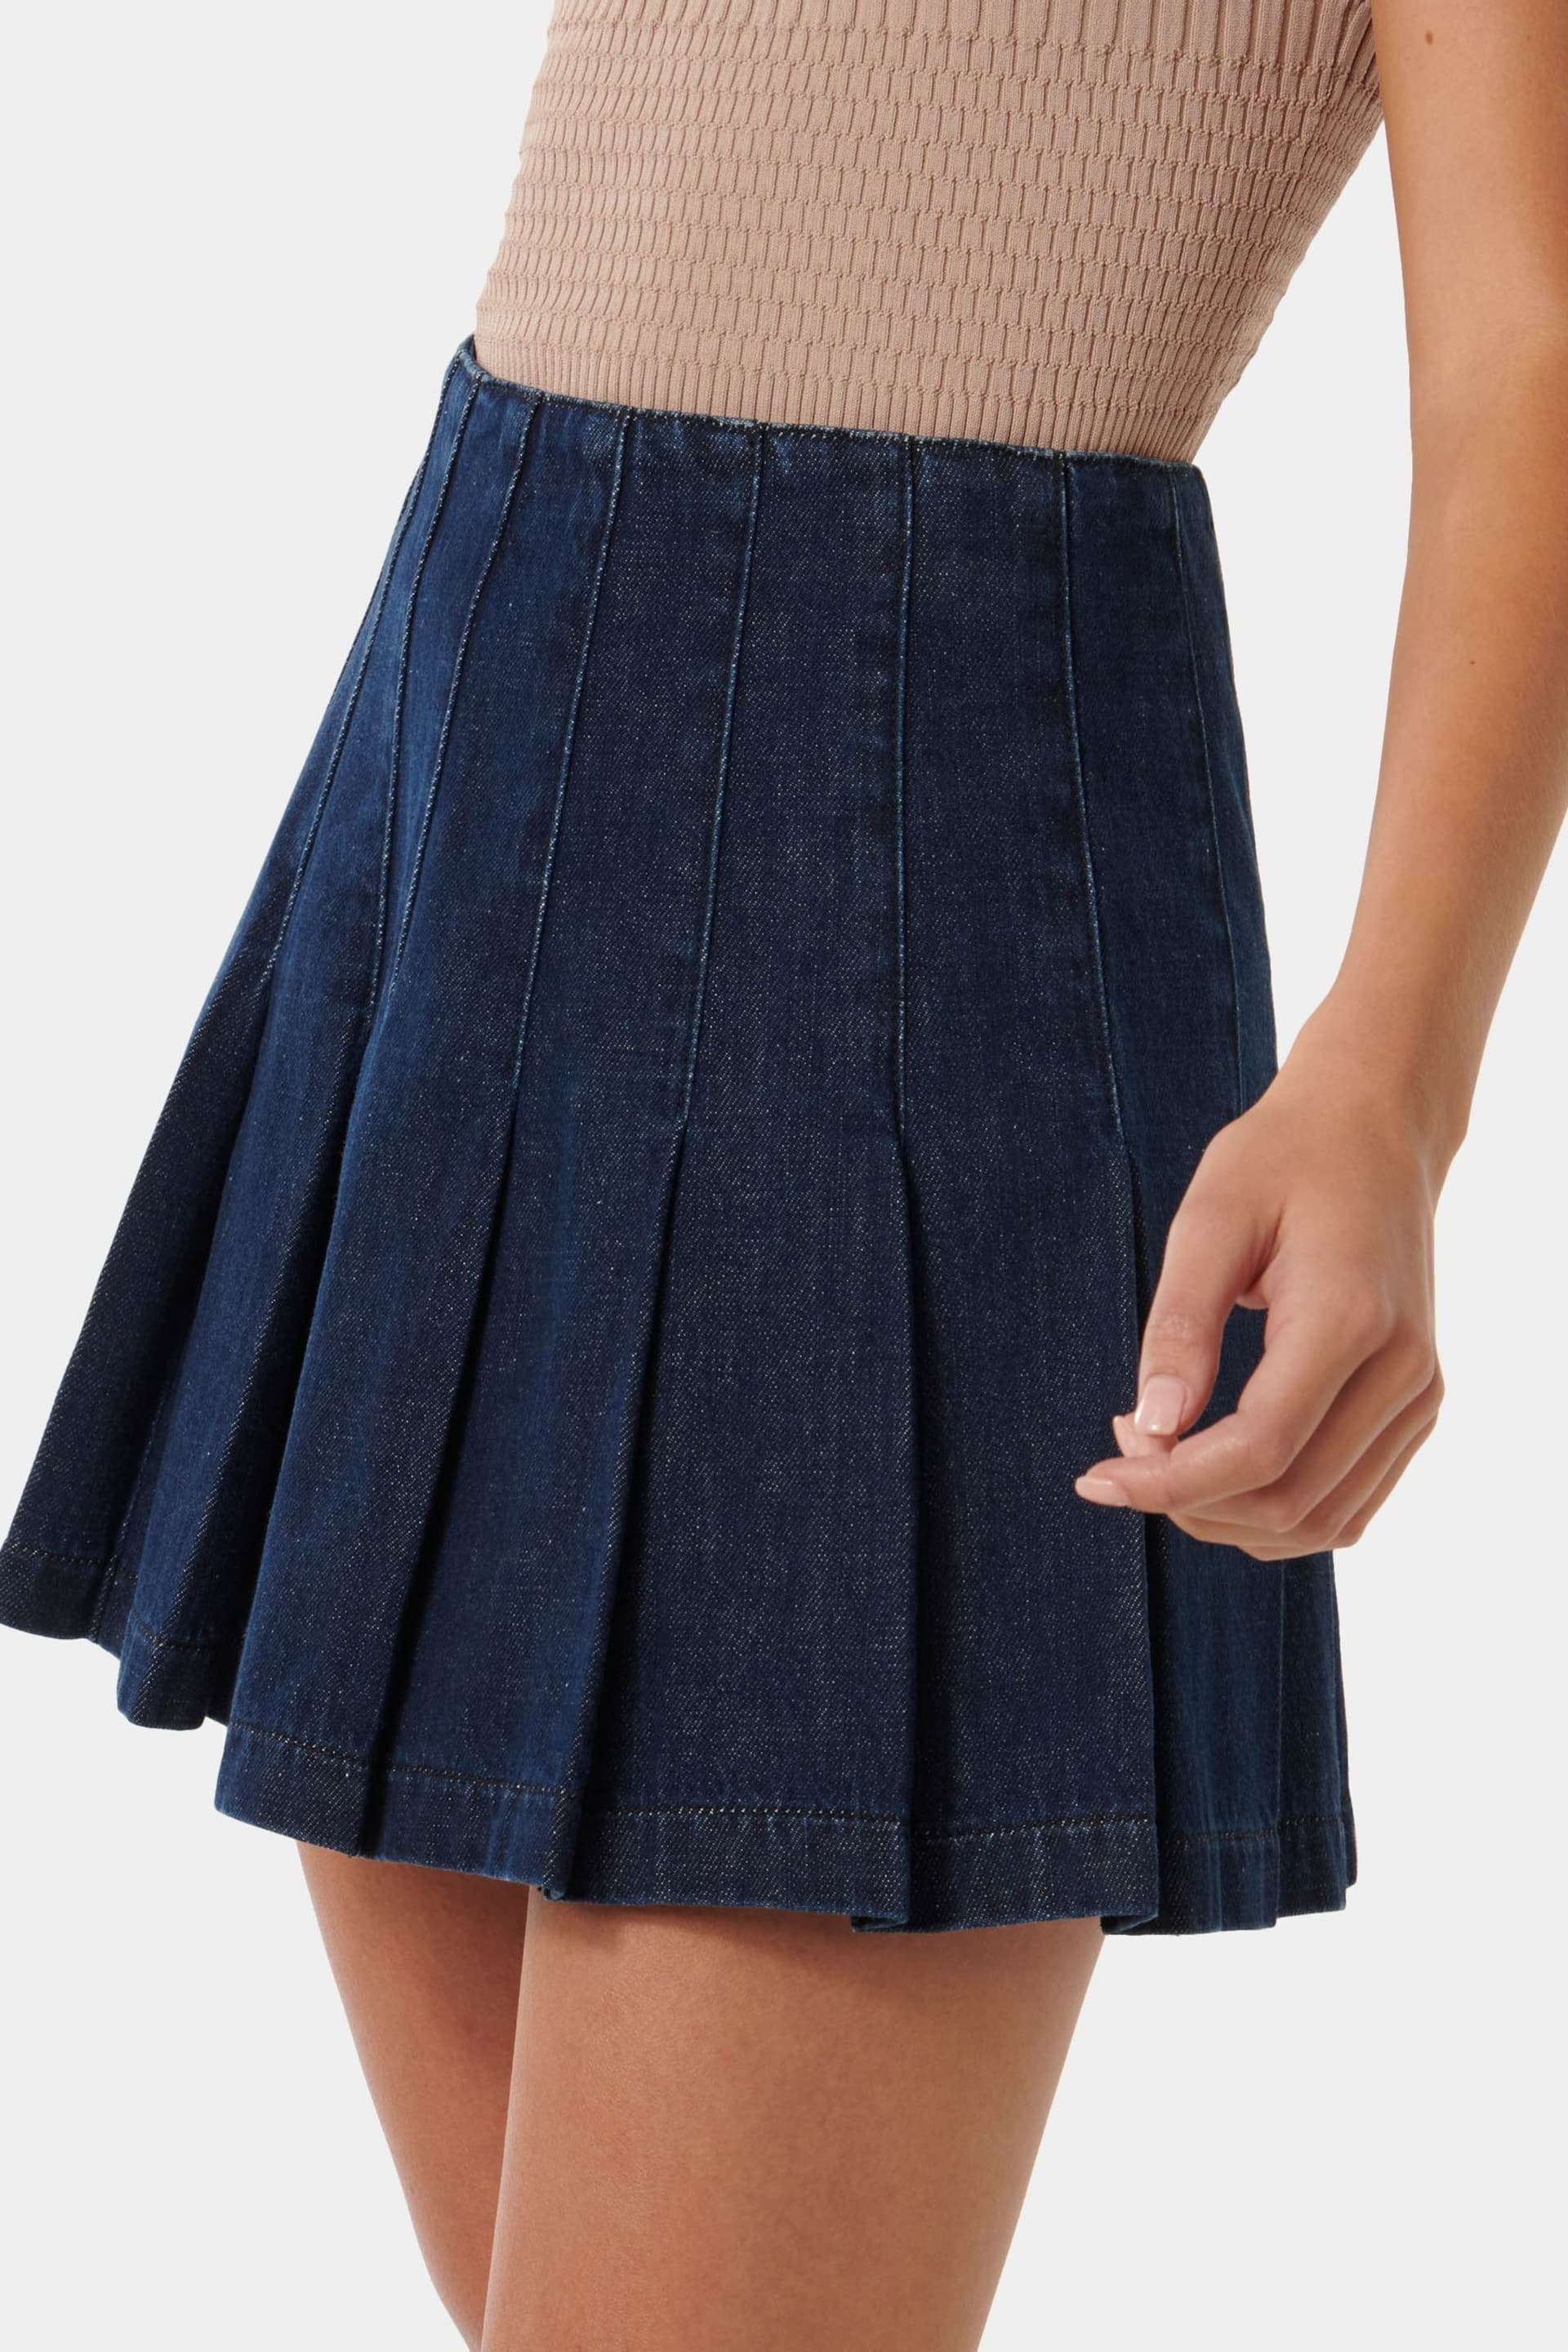 Forever New Blue Chelsea Denim Mini Skirt - Image 3 of 5